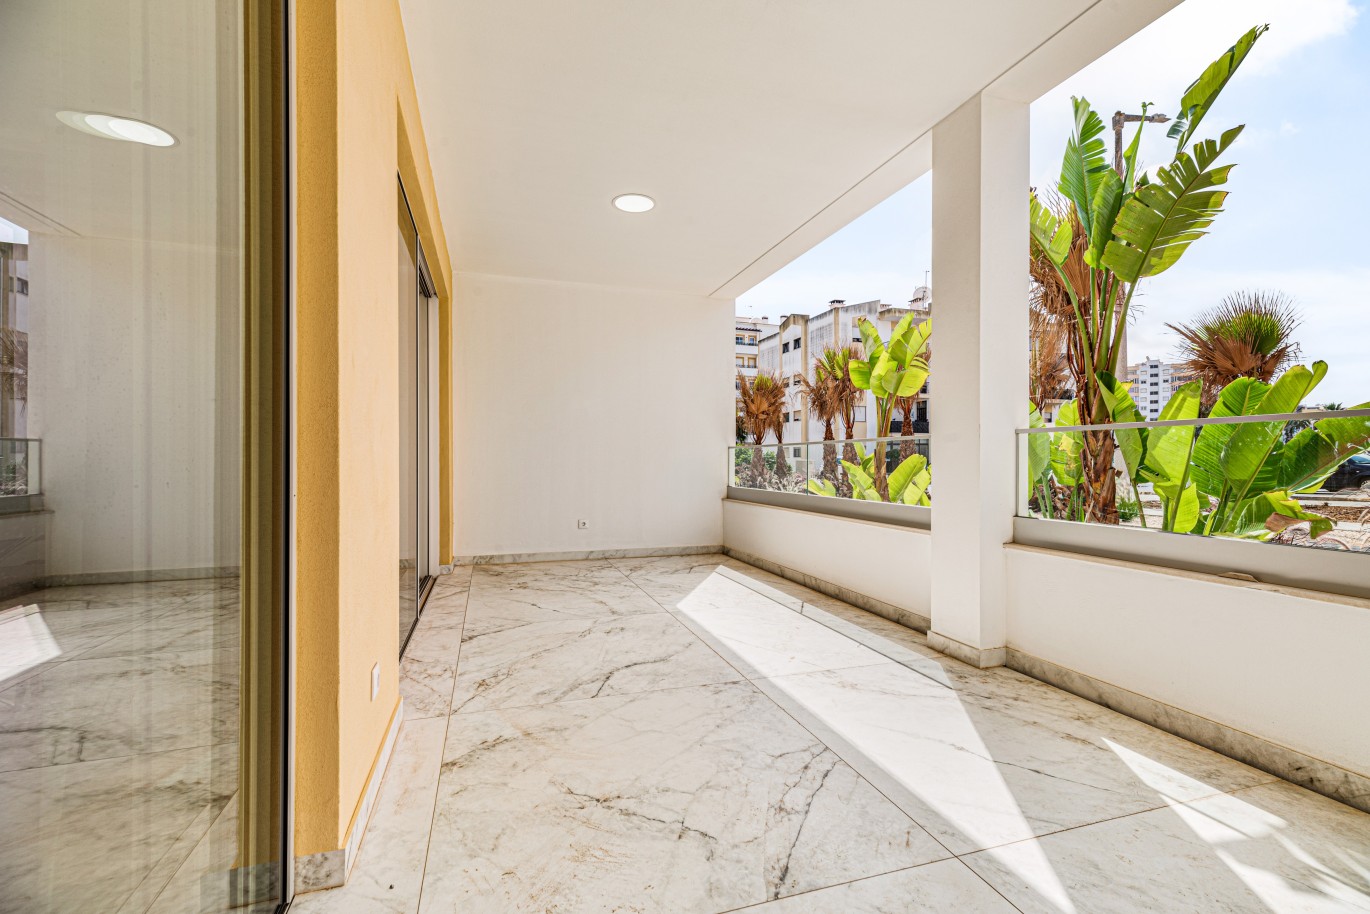 Apartamento, com terraço, para venda, em Lagos, Algarve_238176